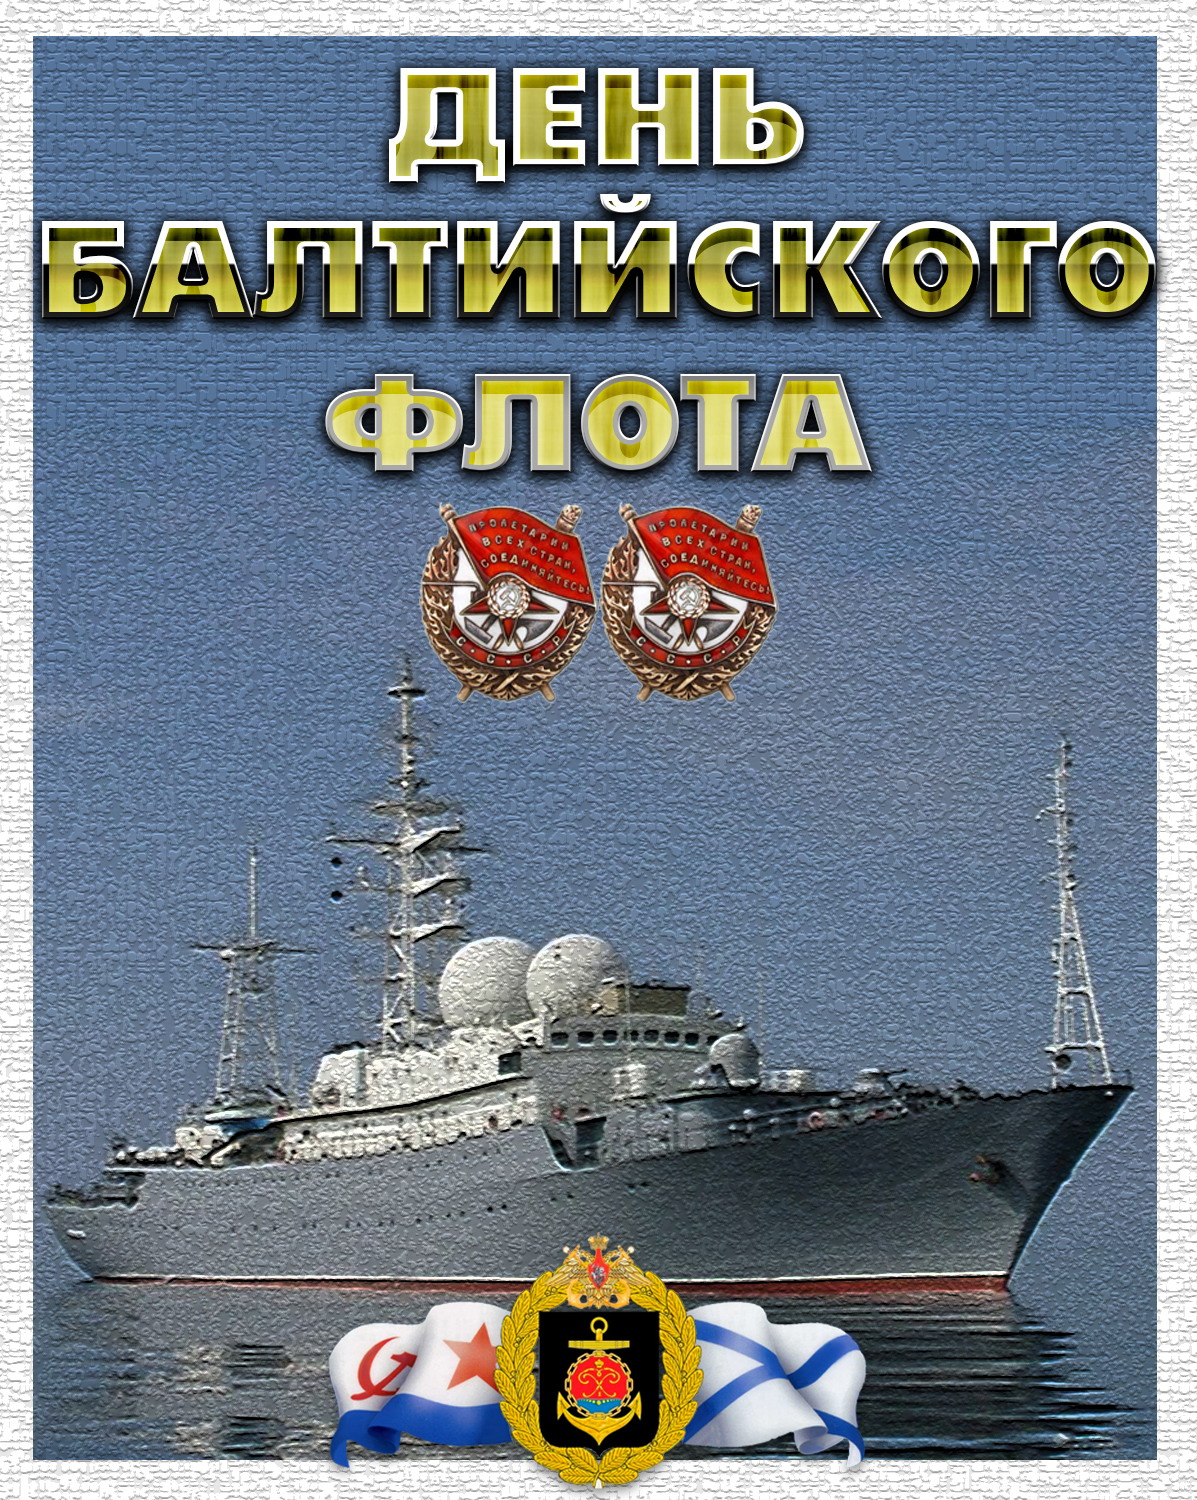 Открытка,картинка день Балтийского флота ВМФ РФ ,сднём Балтийского флота Картинки,открытки на день Балтийского флота ВМФ РФ,открытка с днём балтийского флота РФ,картинка,открытка с поздравлениями с праздником день Балтийского флота .